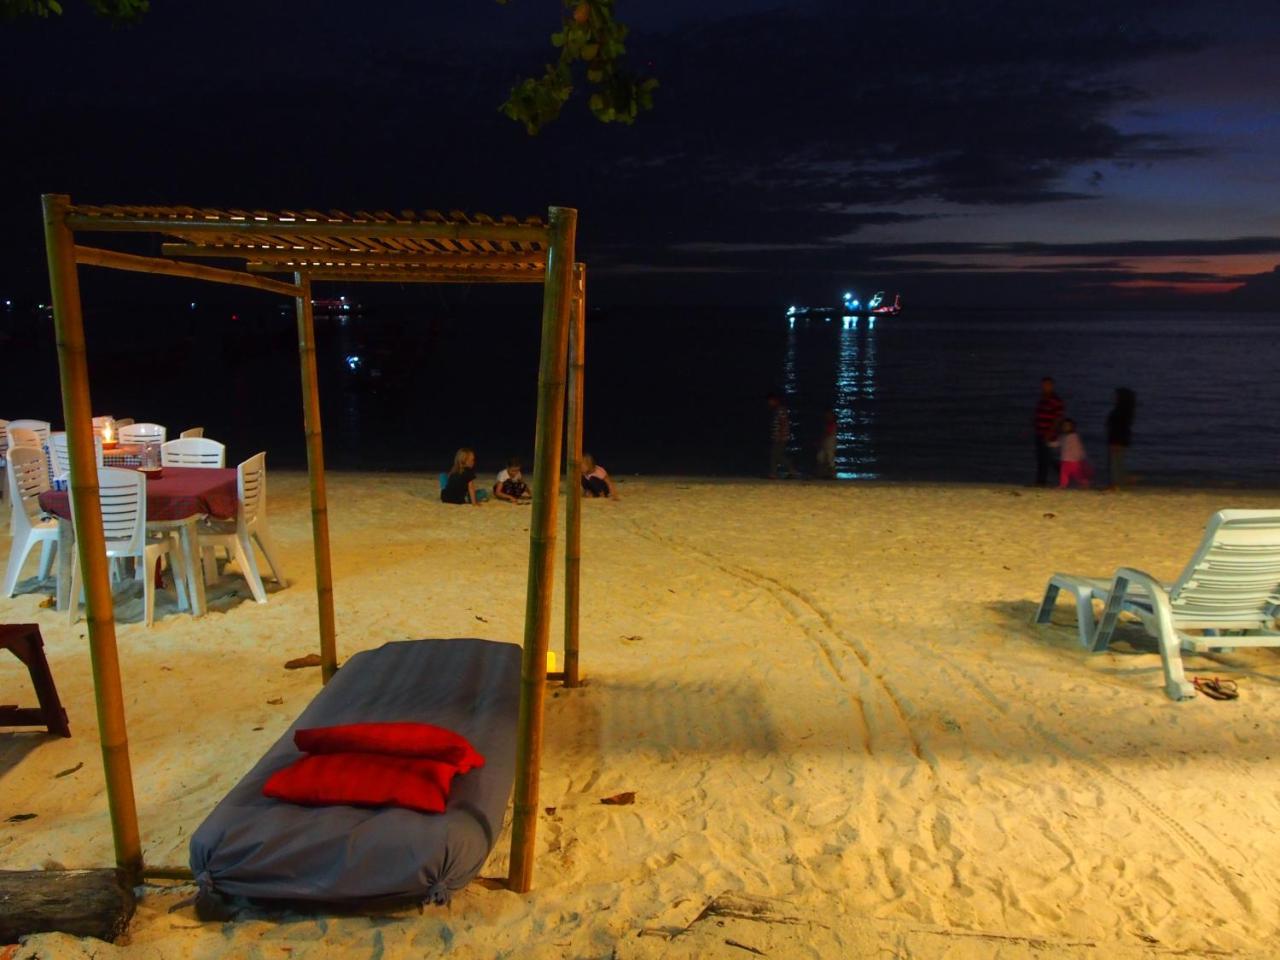 Seaside Resort Koh Lipe Bagian luar foto